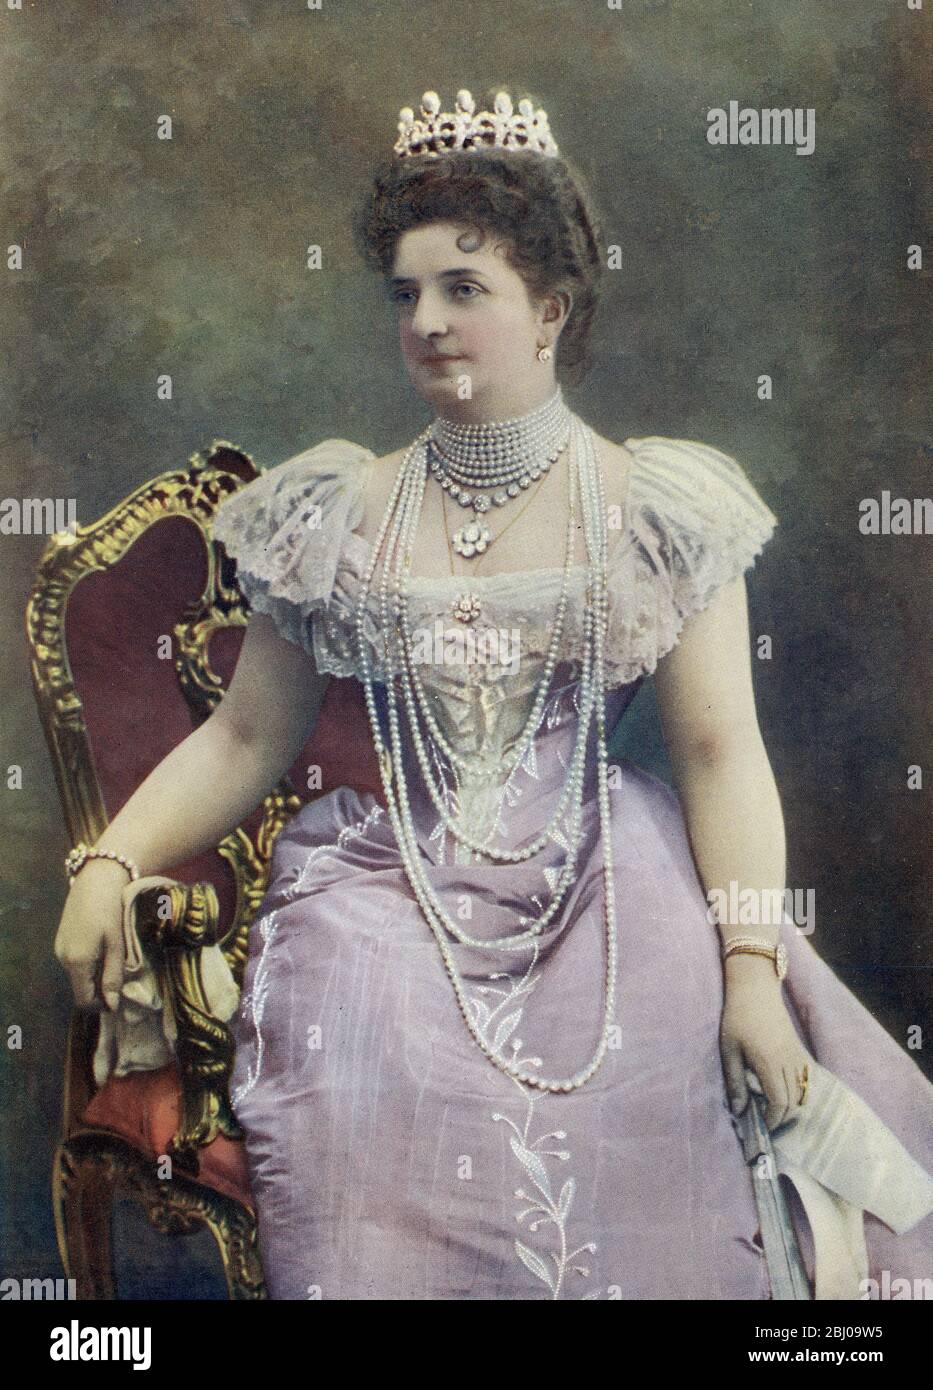 Ihre Majestät die Dowagerkönigin Margherita von Italien - Maria Margherita Teresa Giovanna wurde am 20. November 1851 geboren. - Königin Margherita von Savoyen wurde auf einer Reise nach Neapel eine Pizza in den Farben der italienischen Flagge geschenkt und sie wurde von da an Pizza Margherita genannt. Stockfoto